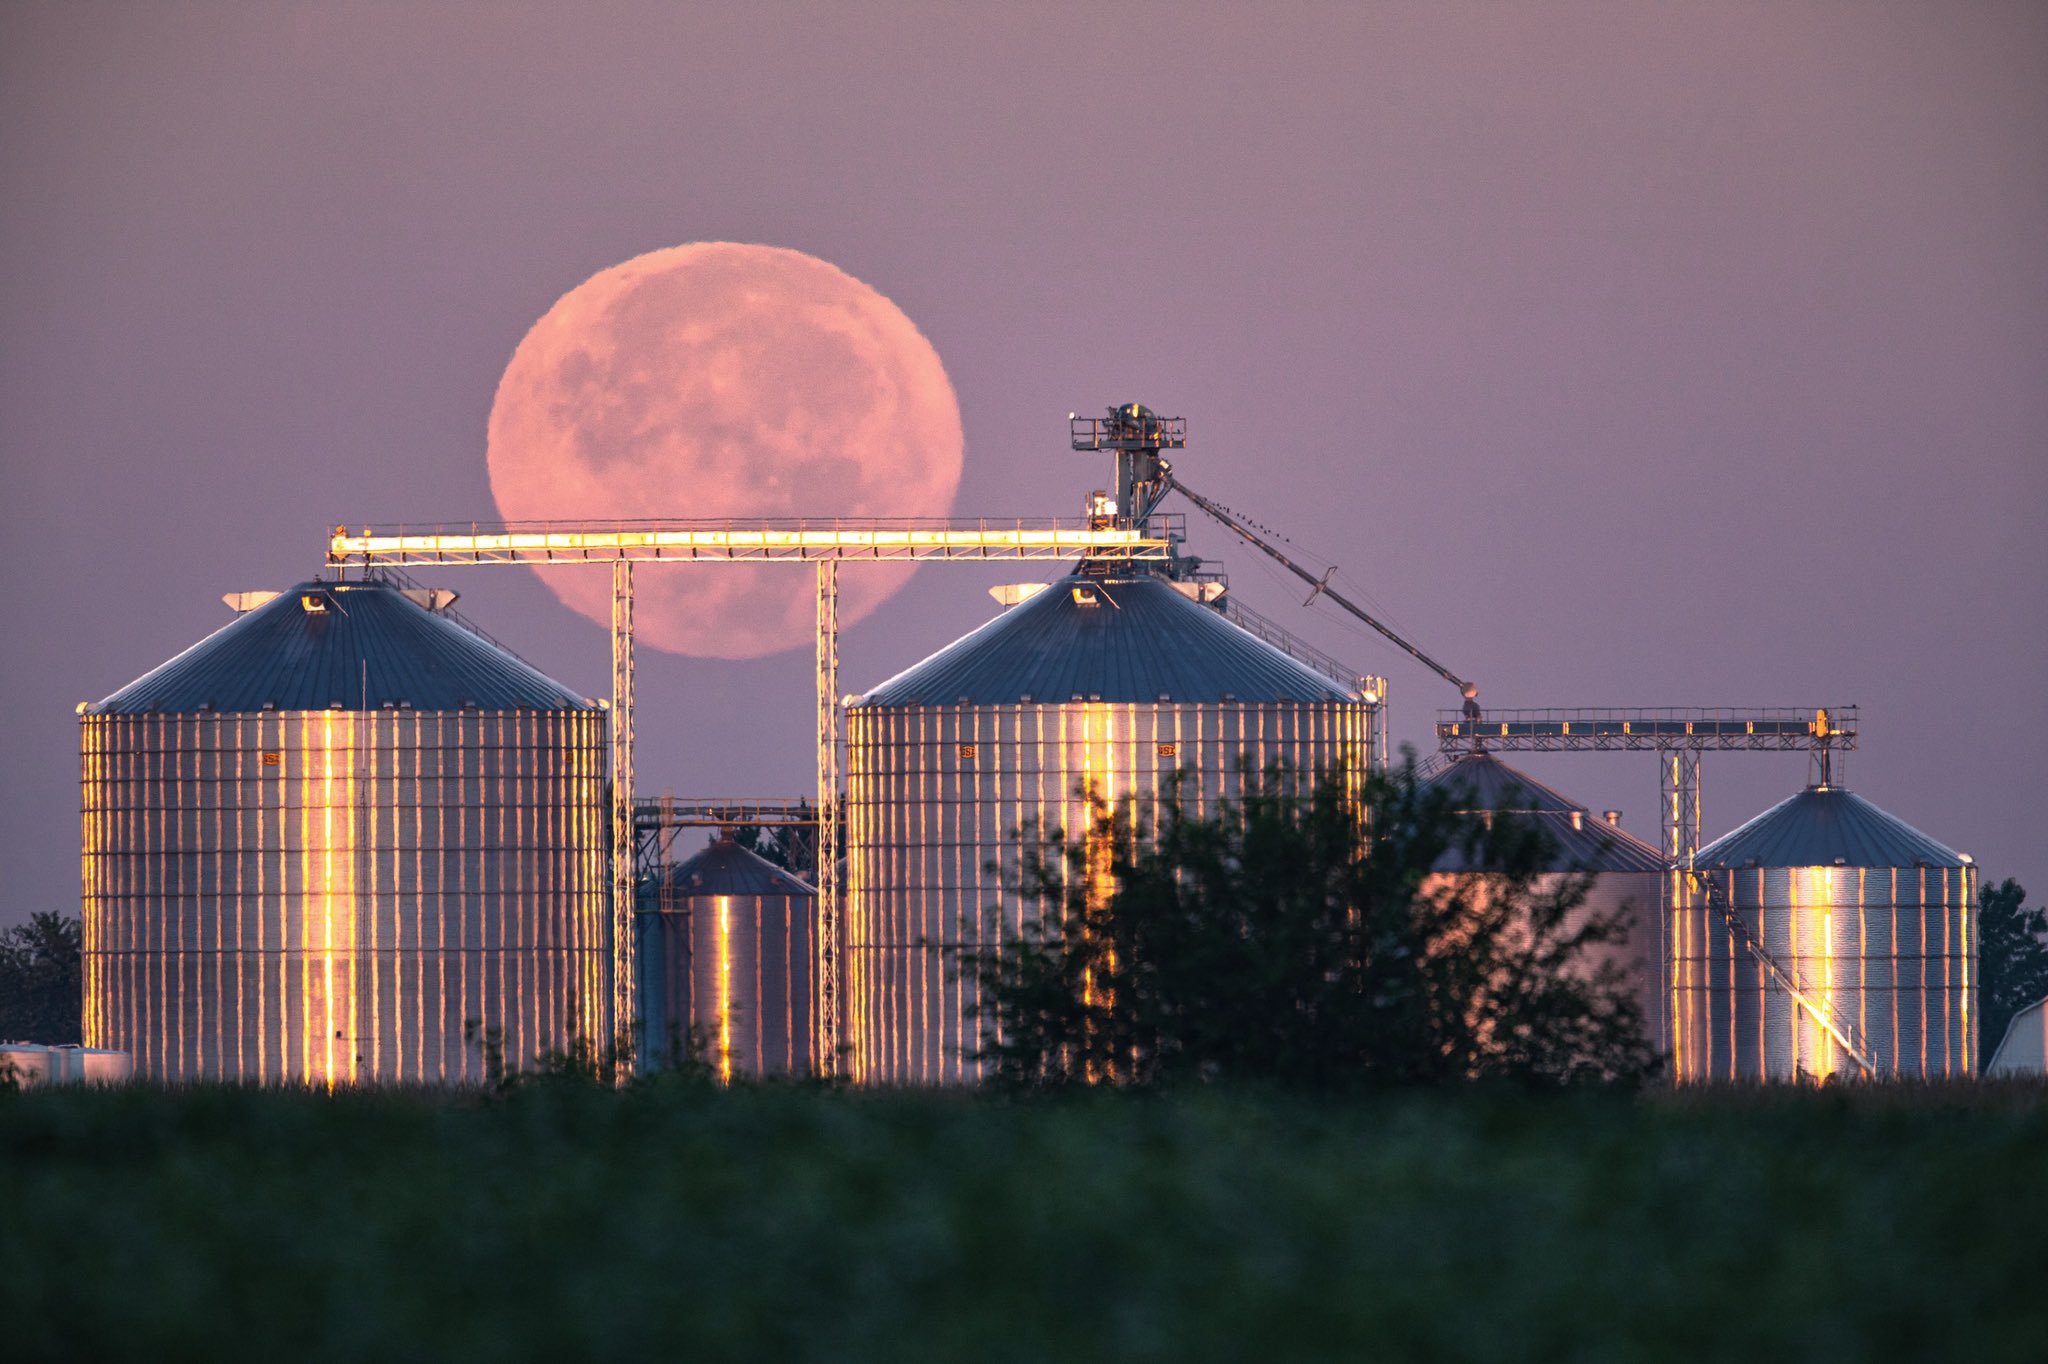 Full Harvest Moon by Tom Jones @tomjonesfoto